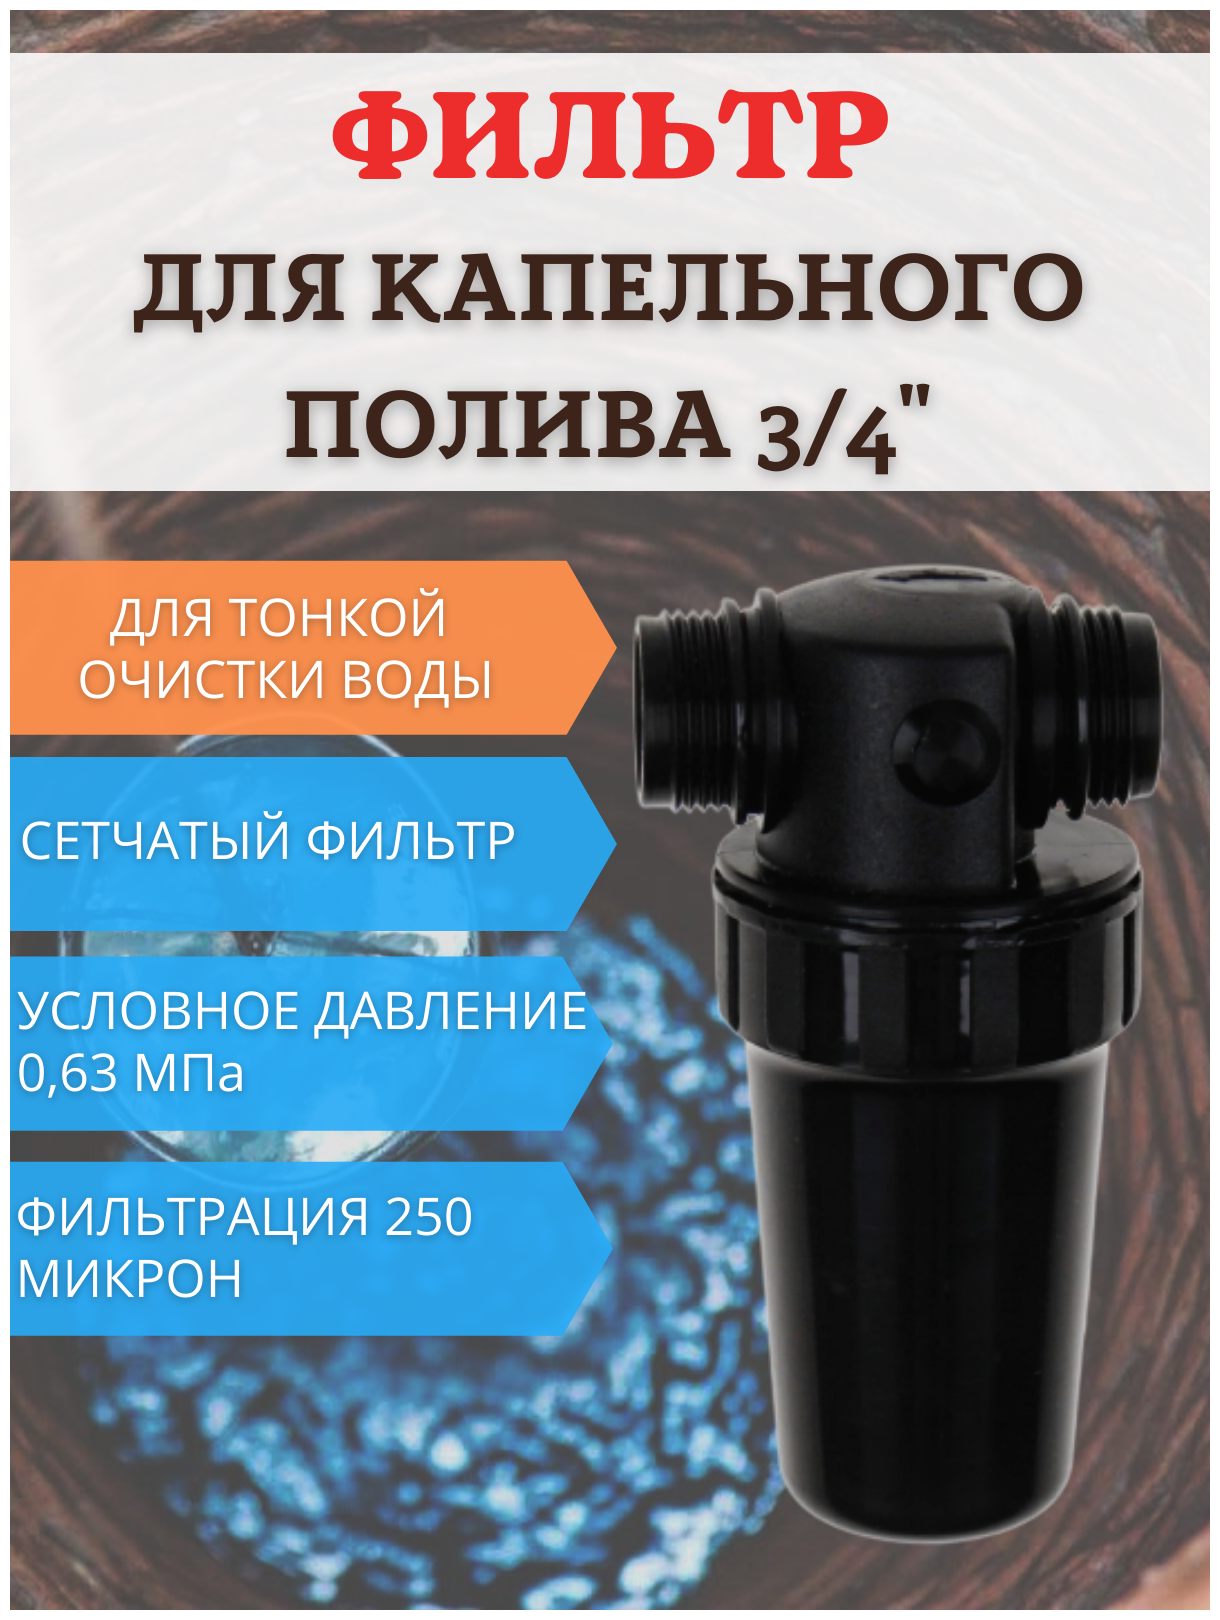 Фильтр средней очистки воды ФОВ-250 сетчатый